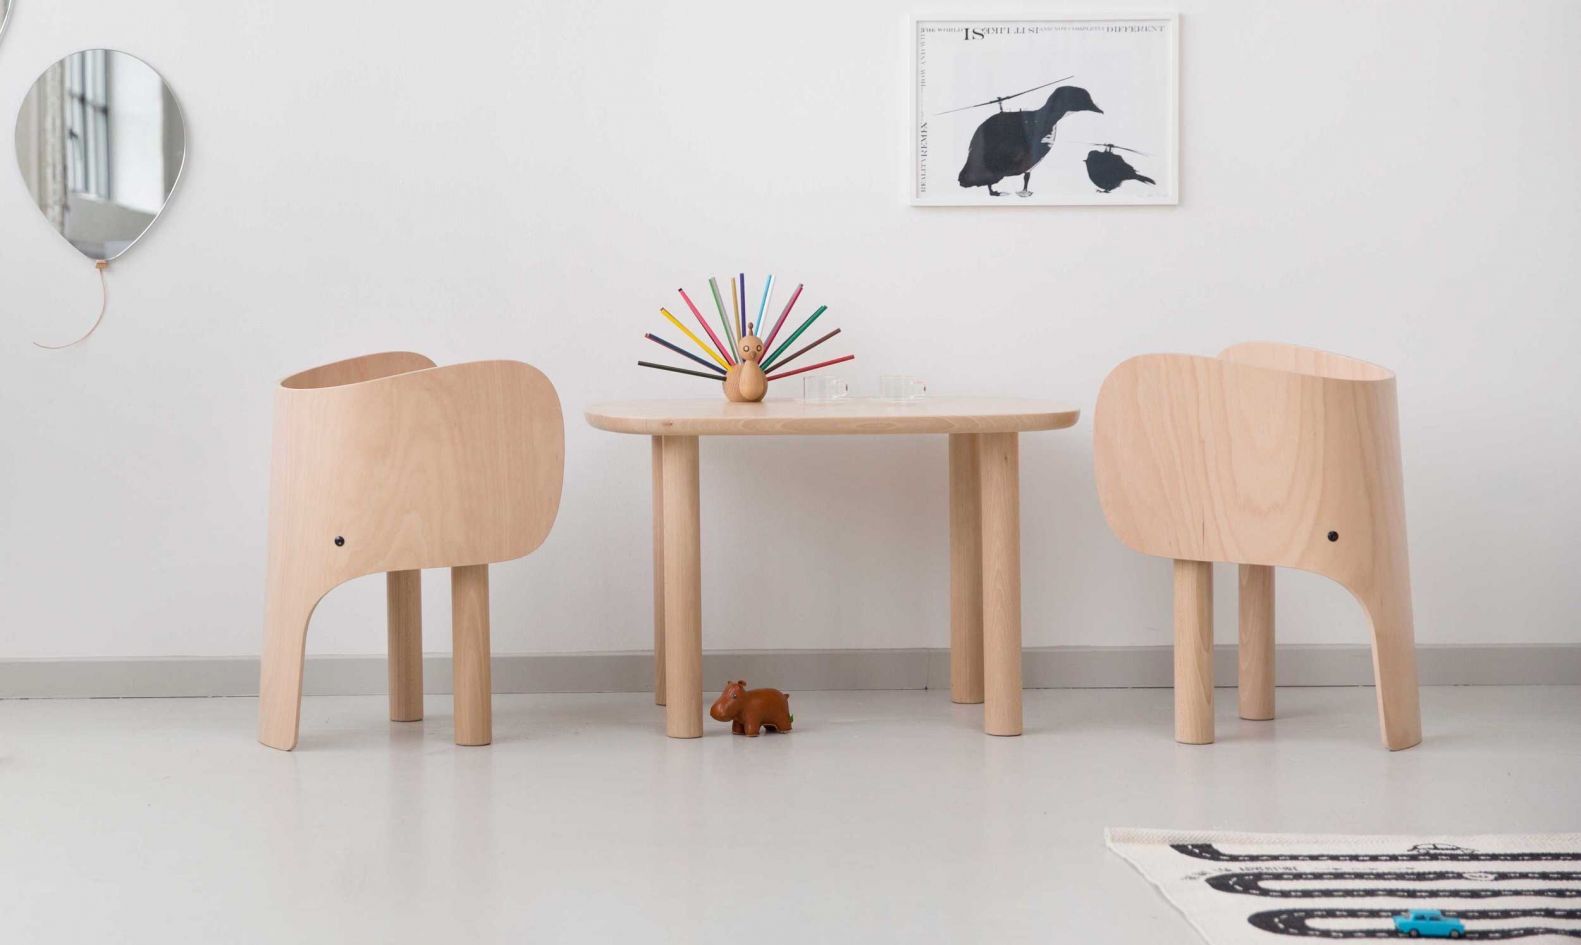 Ein schöner Rücken kann auch entzücken: Beim «Elephant Chair» des Designers Marc Venot ist das jedenfalls so. Der Kinderstuhl ist aus massivem, europäischem Buchenholz gefertigt. Zum Schutz wurde dieser zum Schluss mit einem matten Lack versehen. Passend dazu gibt es den Tisch «Elephant Table». WWW.EO.DK